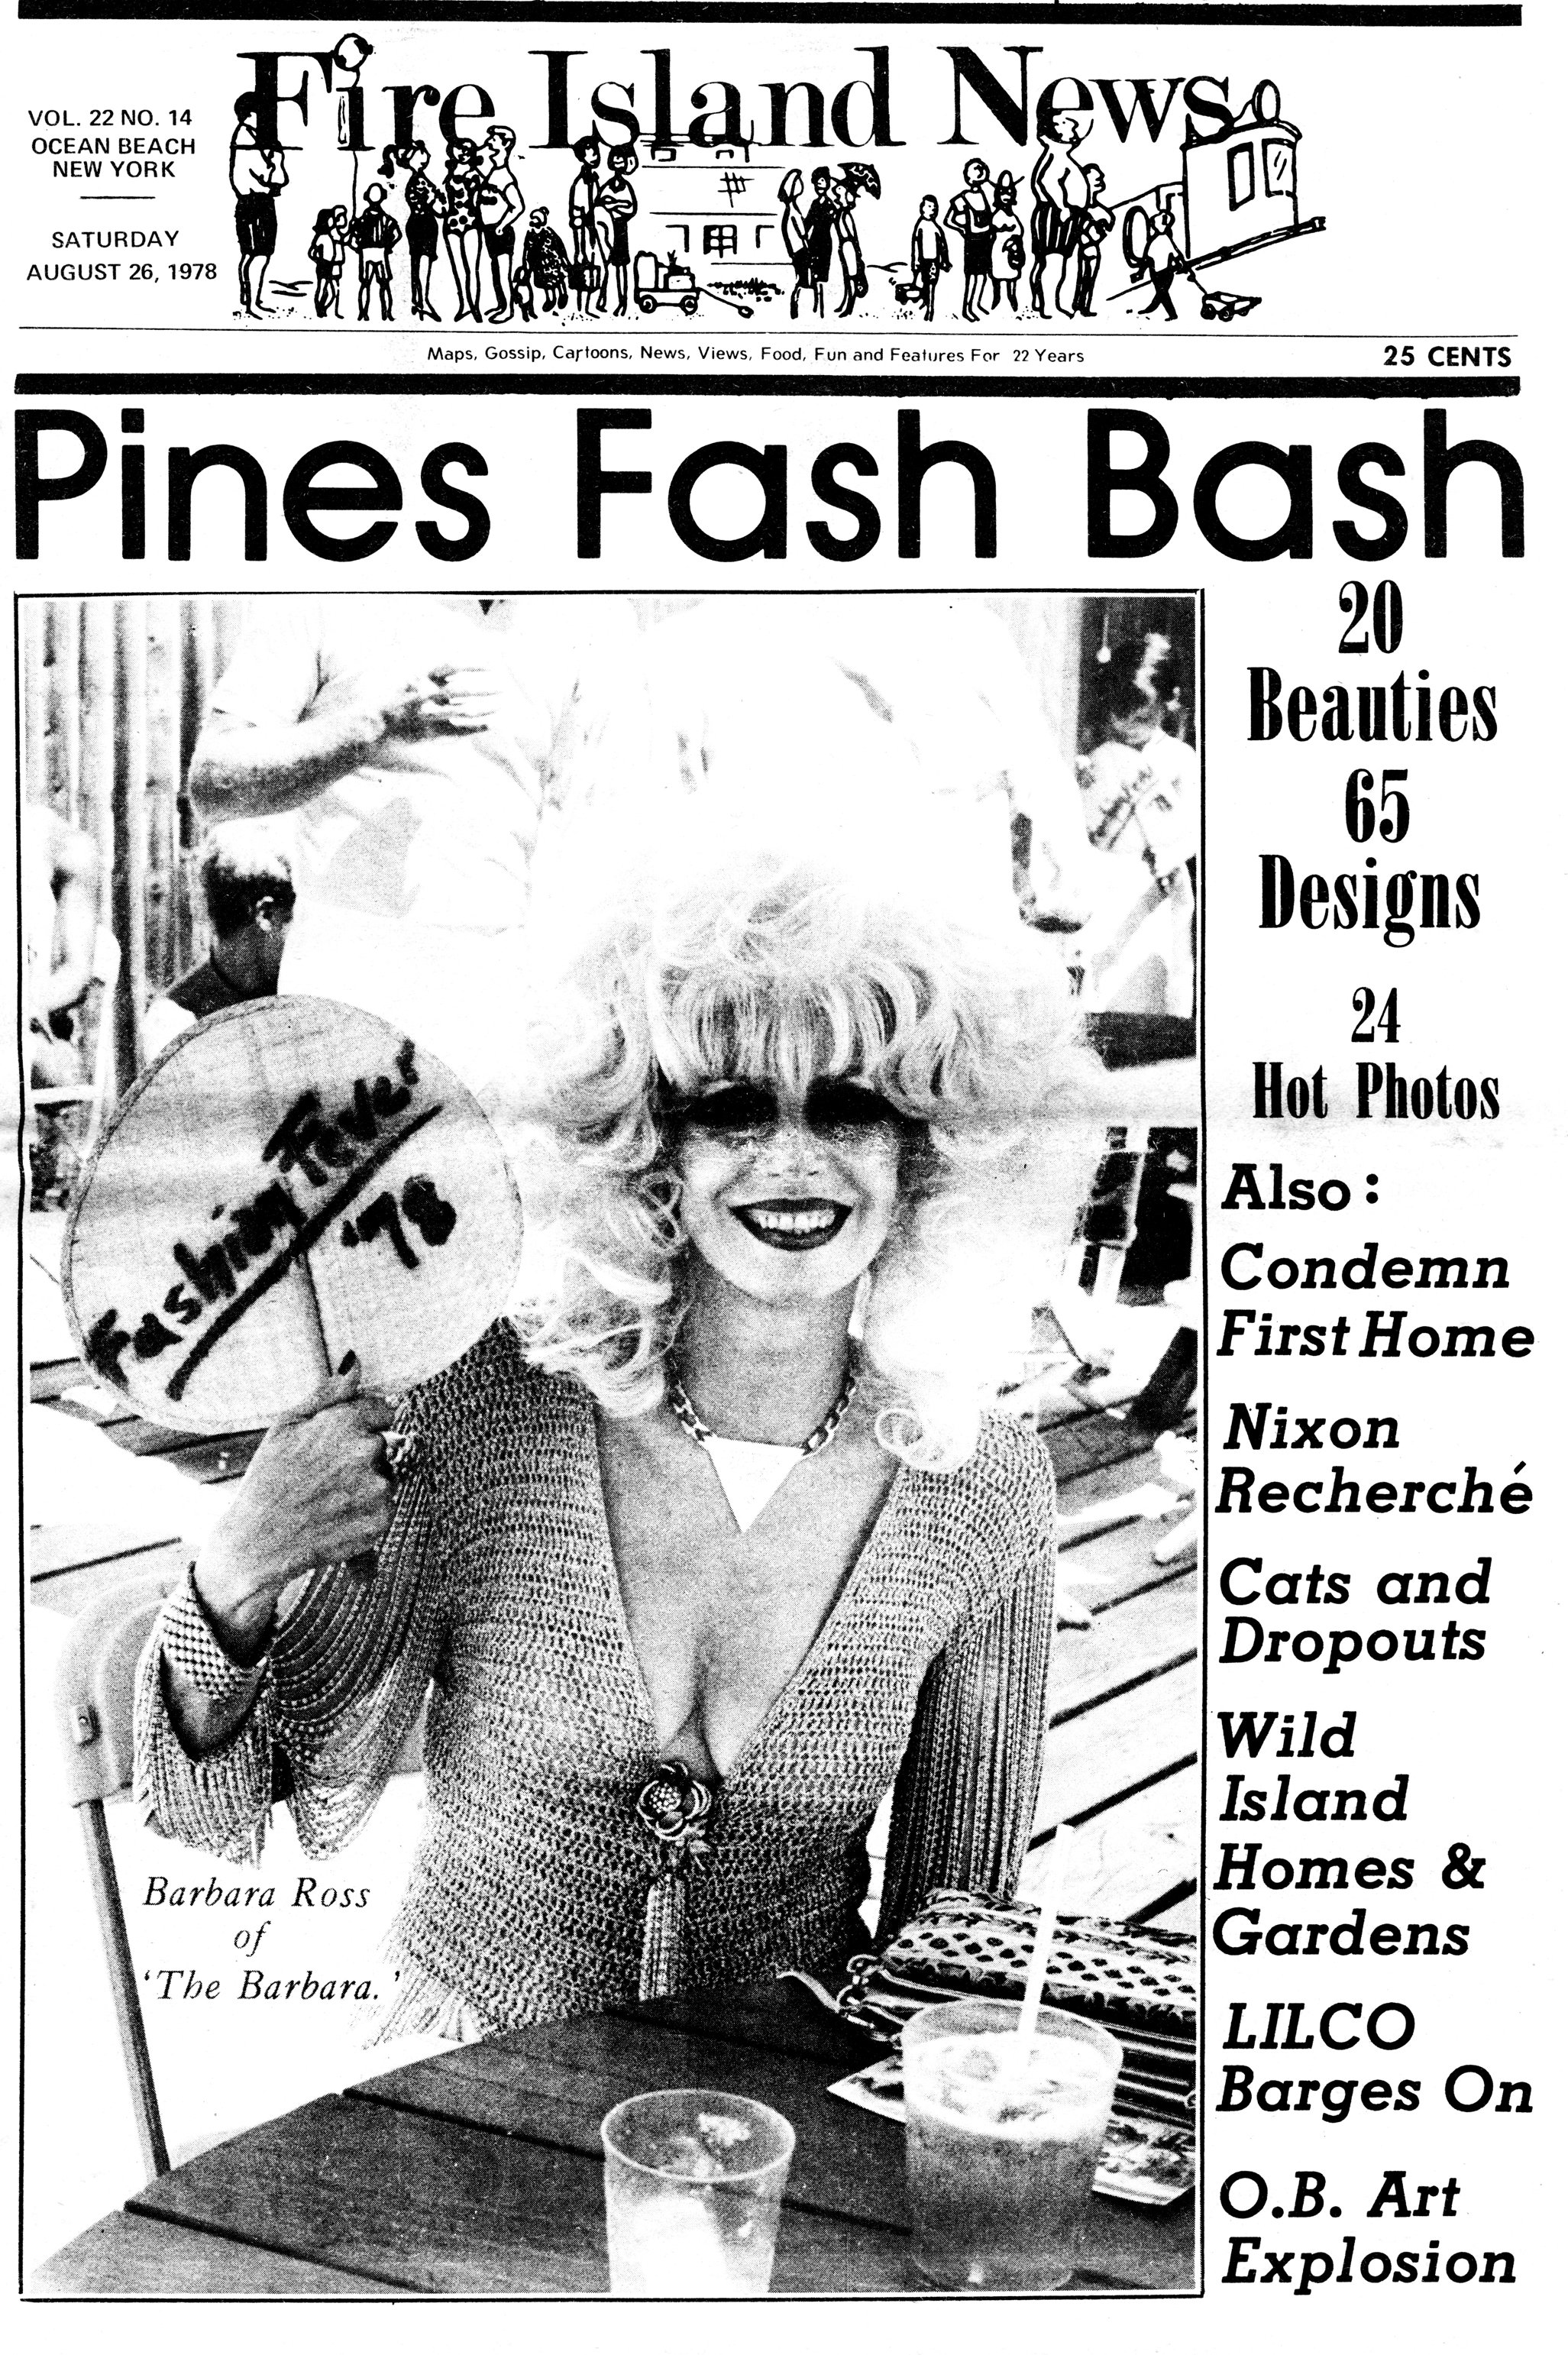 barbra ross 1978 FI News cover.JPG